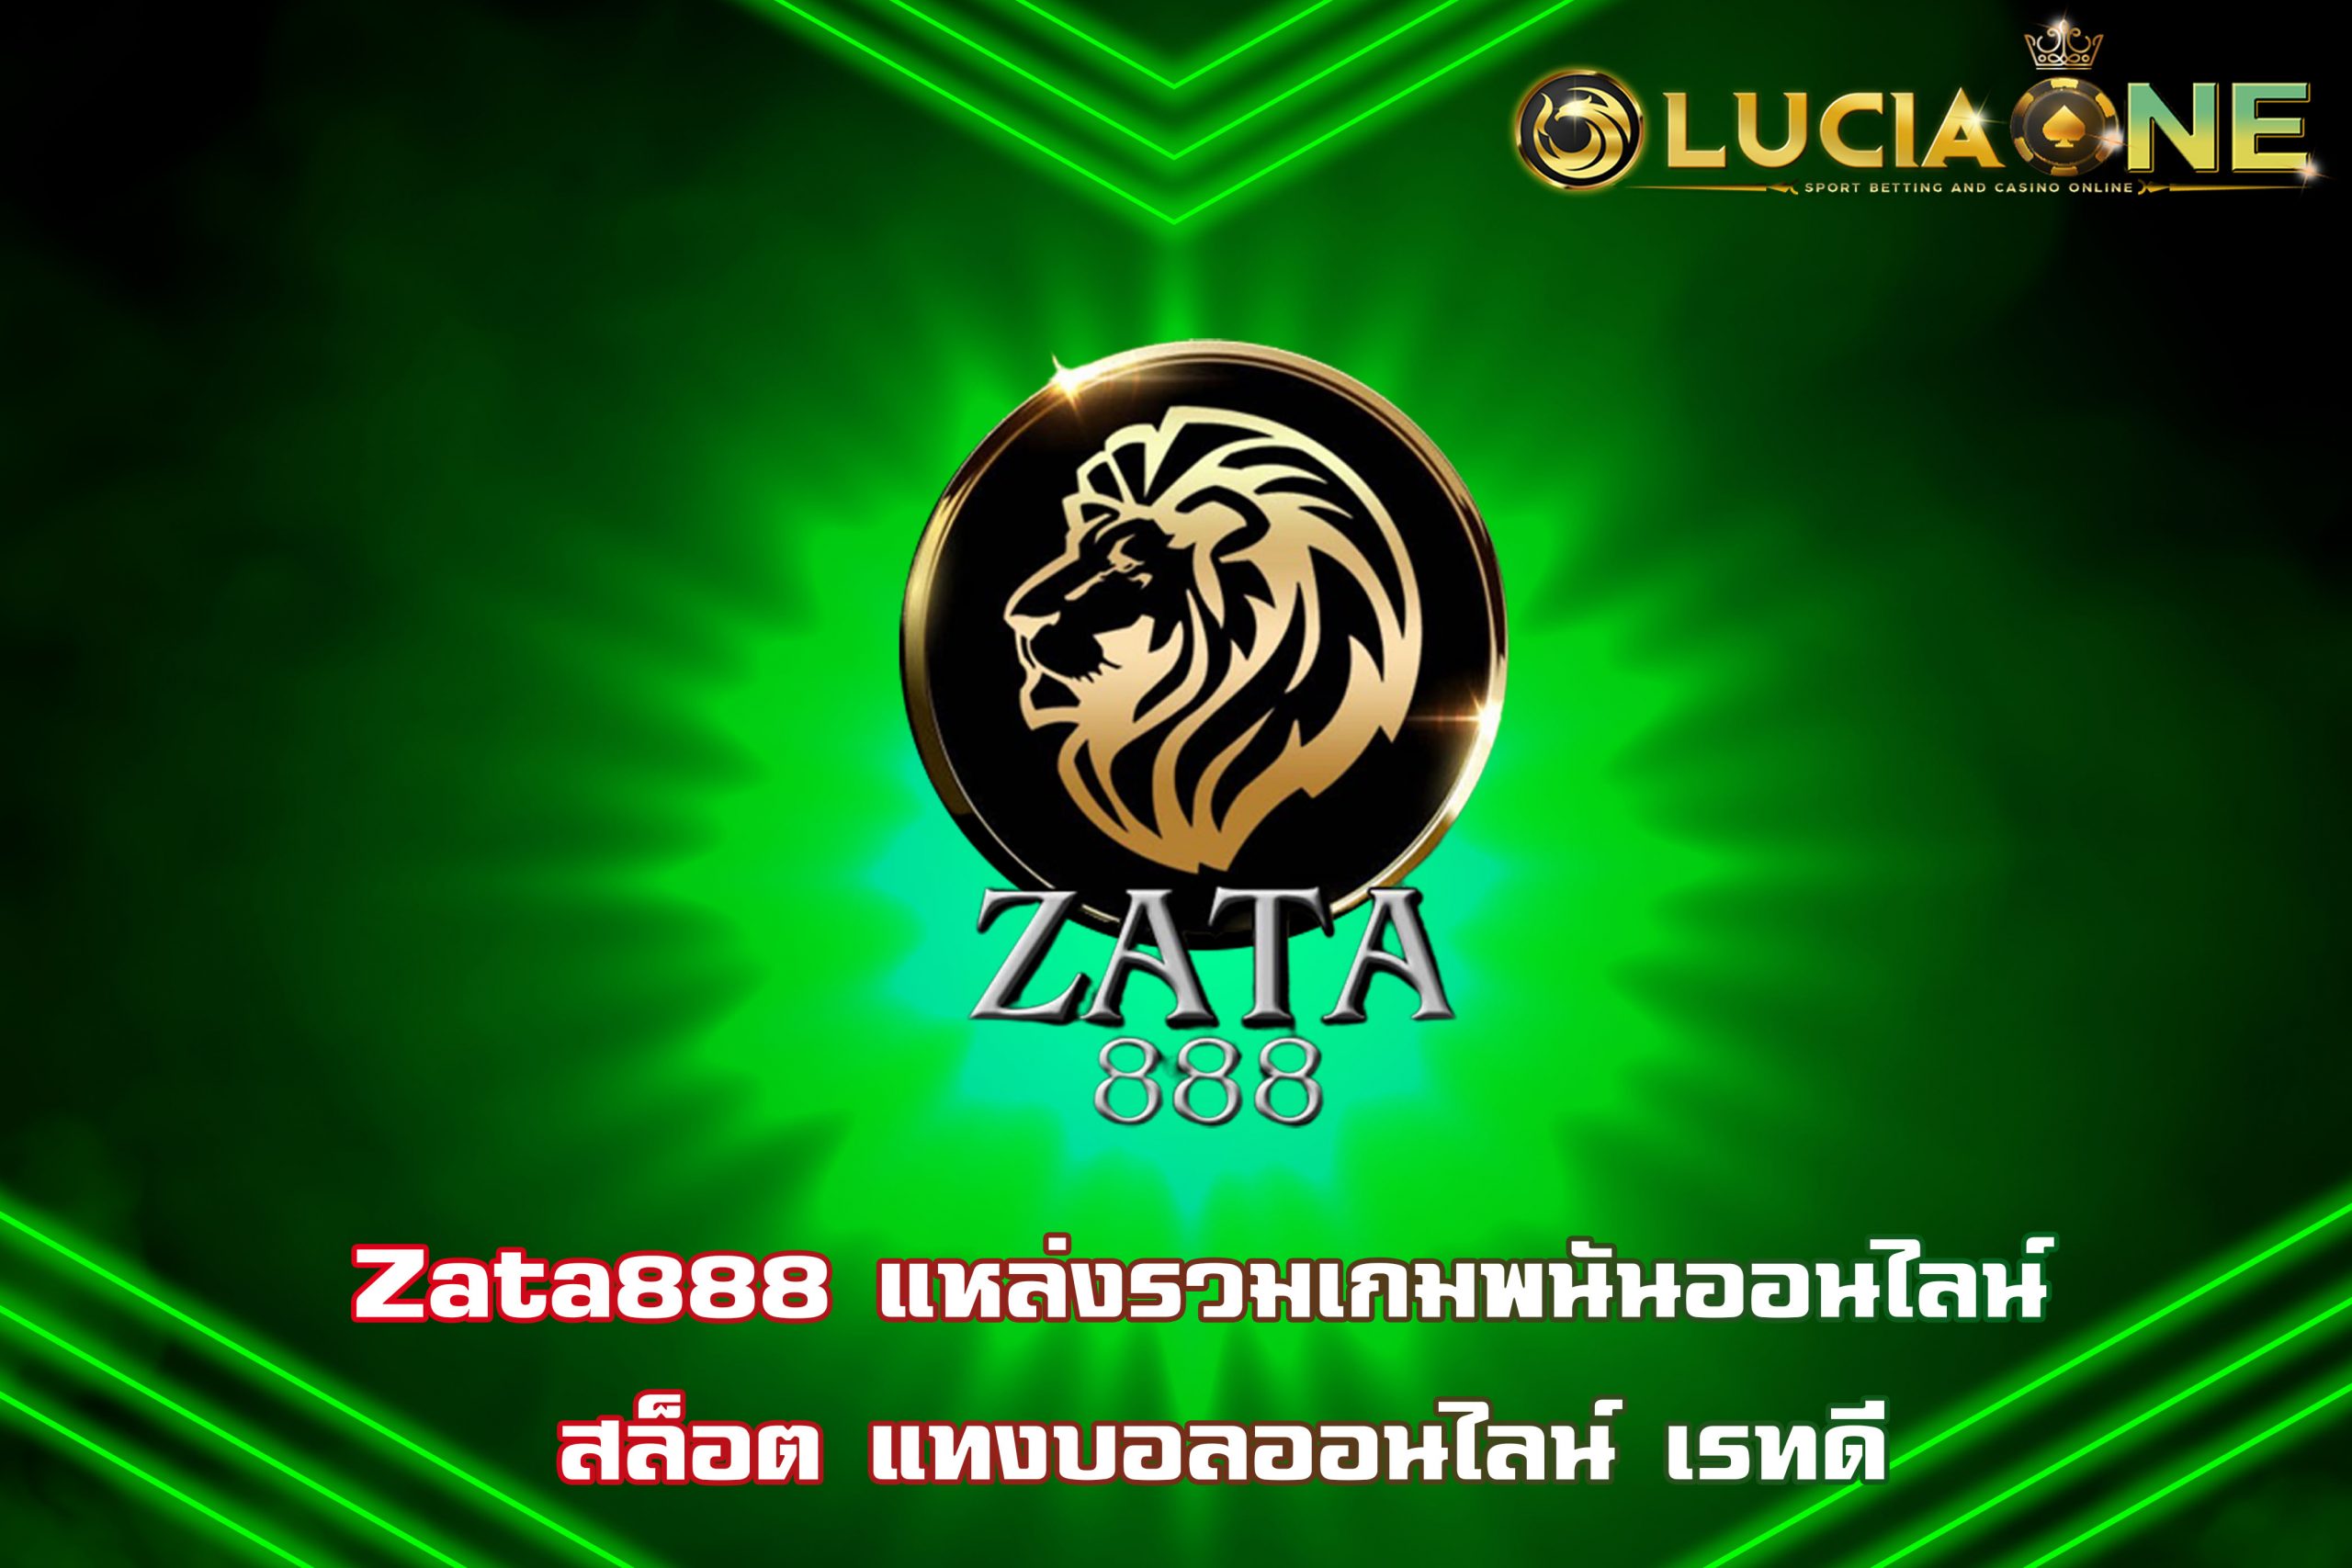 Zata888 แหล่งรวมเกมพนันออนไลน์ สล็อต แทงบอลออนไลน์ เรทดี